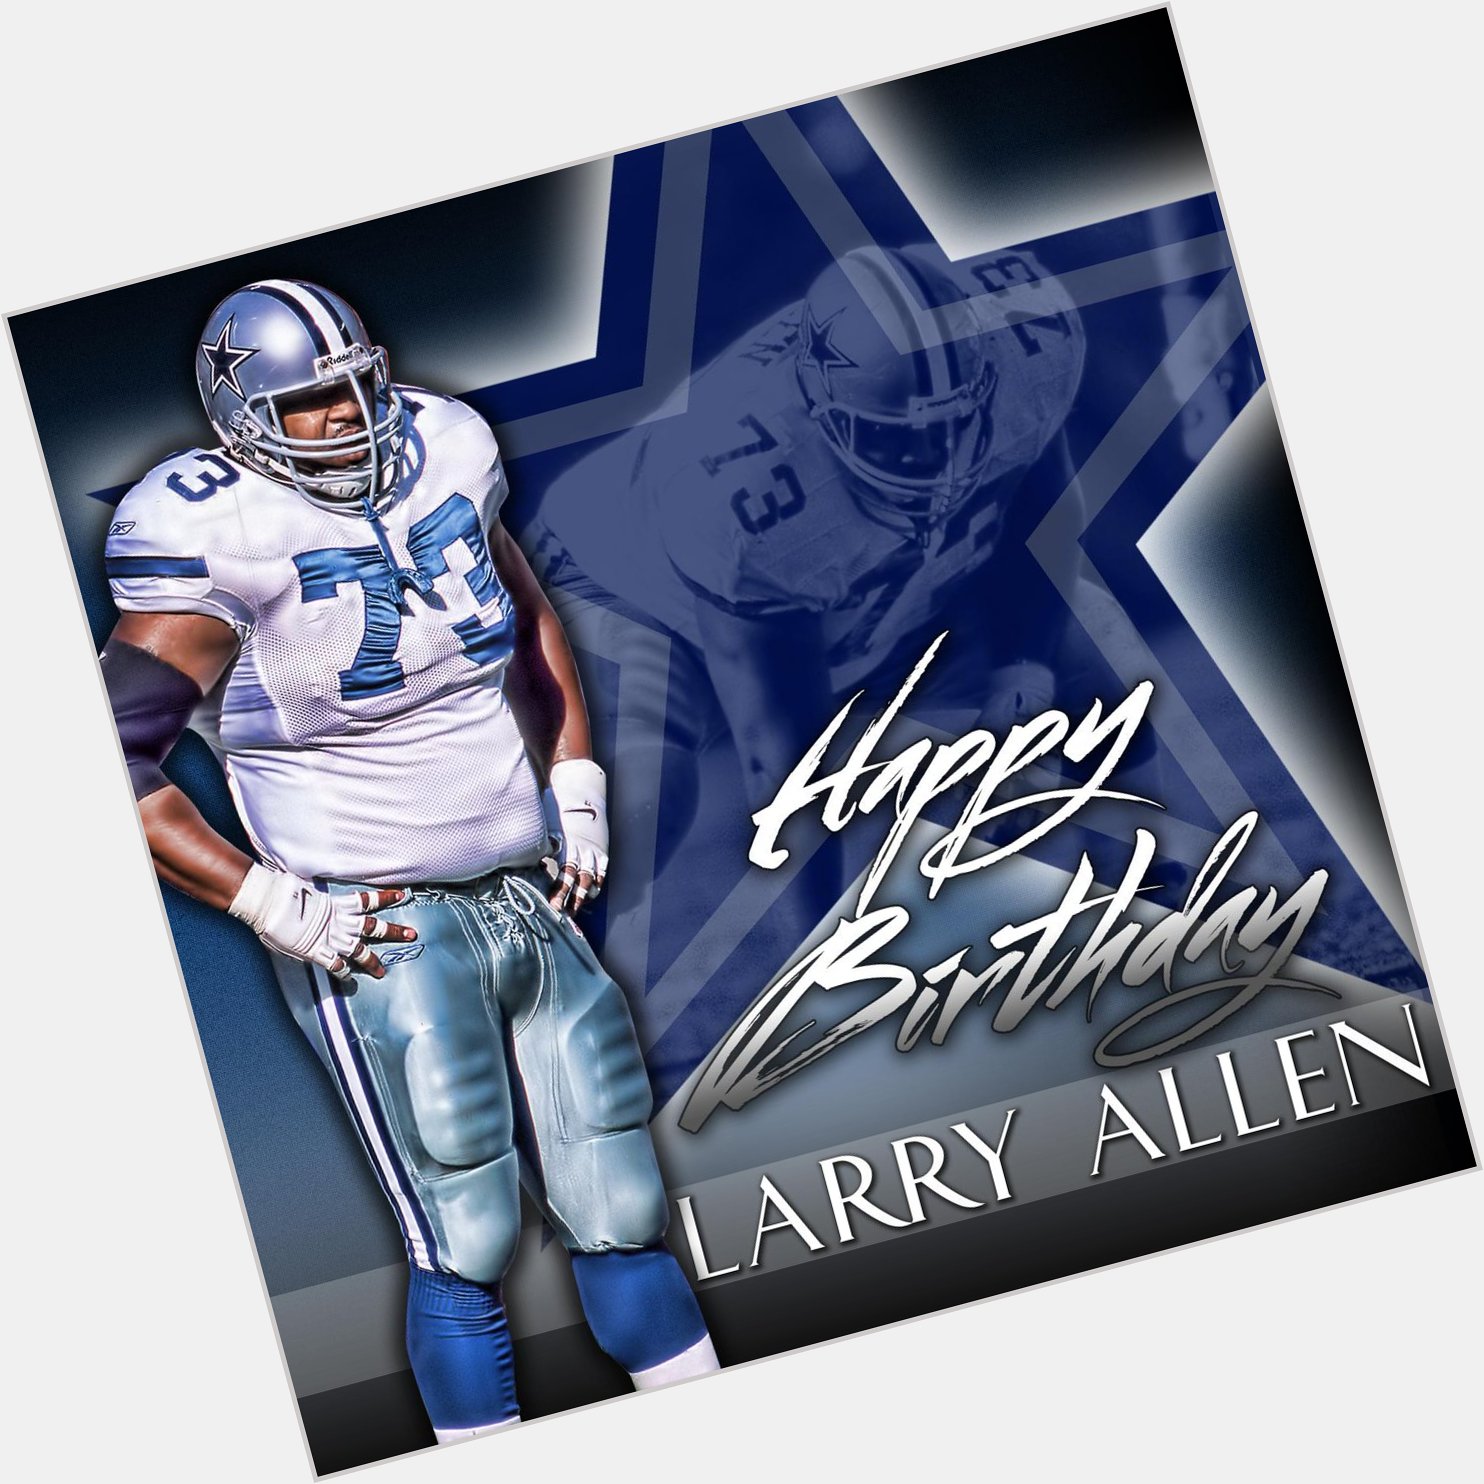   Happy Birthday to Larry Allen! 